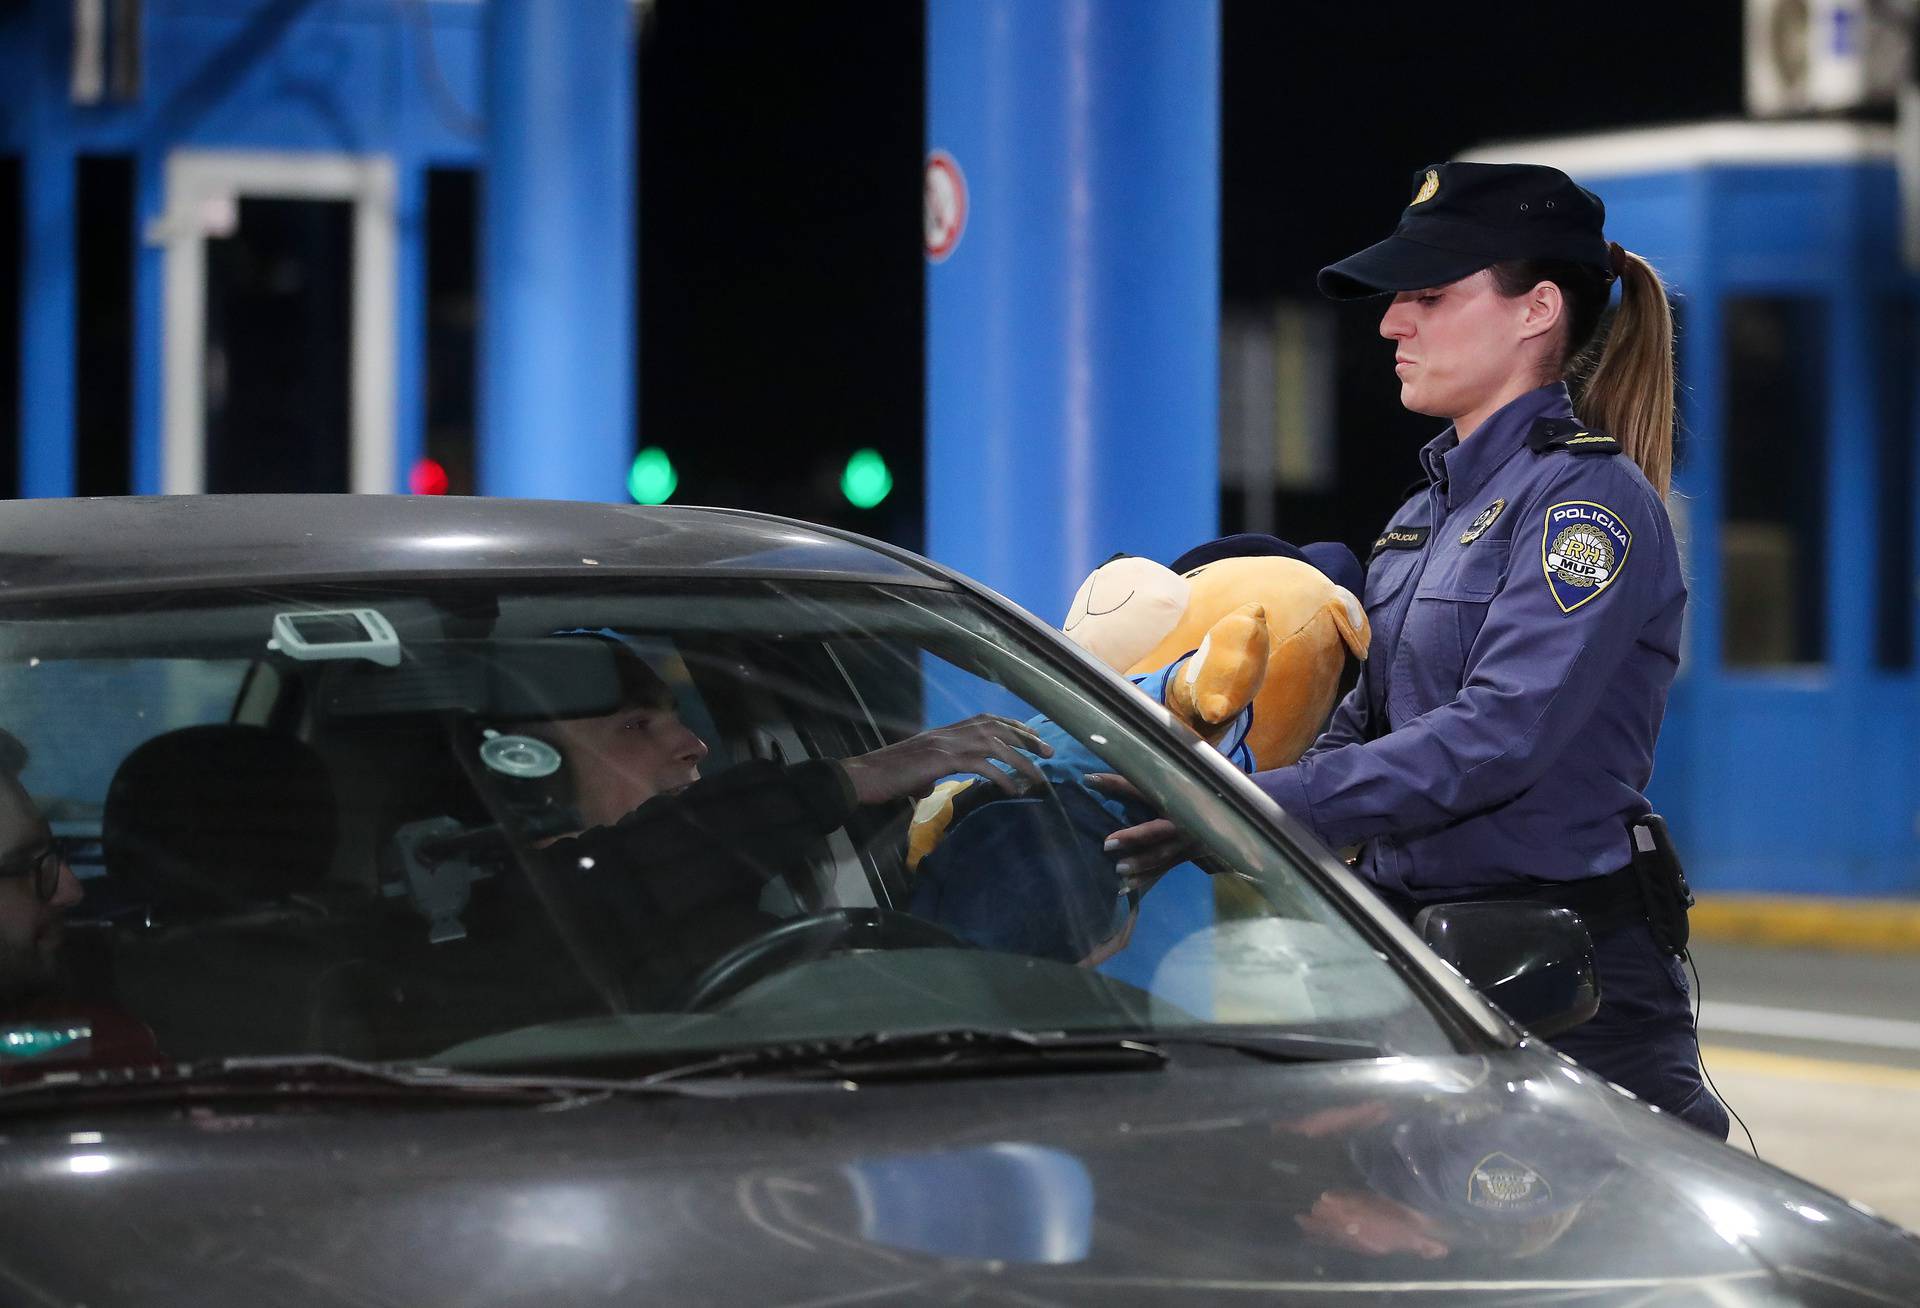 Posljednji putnik na graničnom prijelazu Bregana prije ulaska Hrvatske u Schengen nagrađen je policijskim medvjedićem